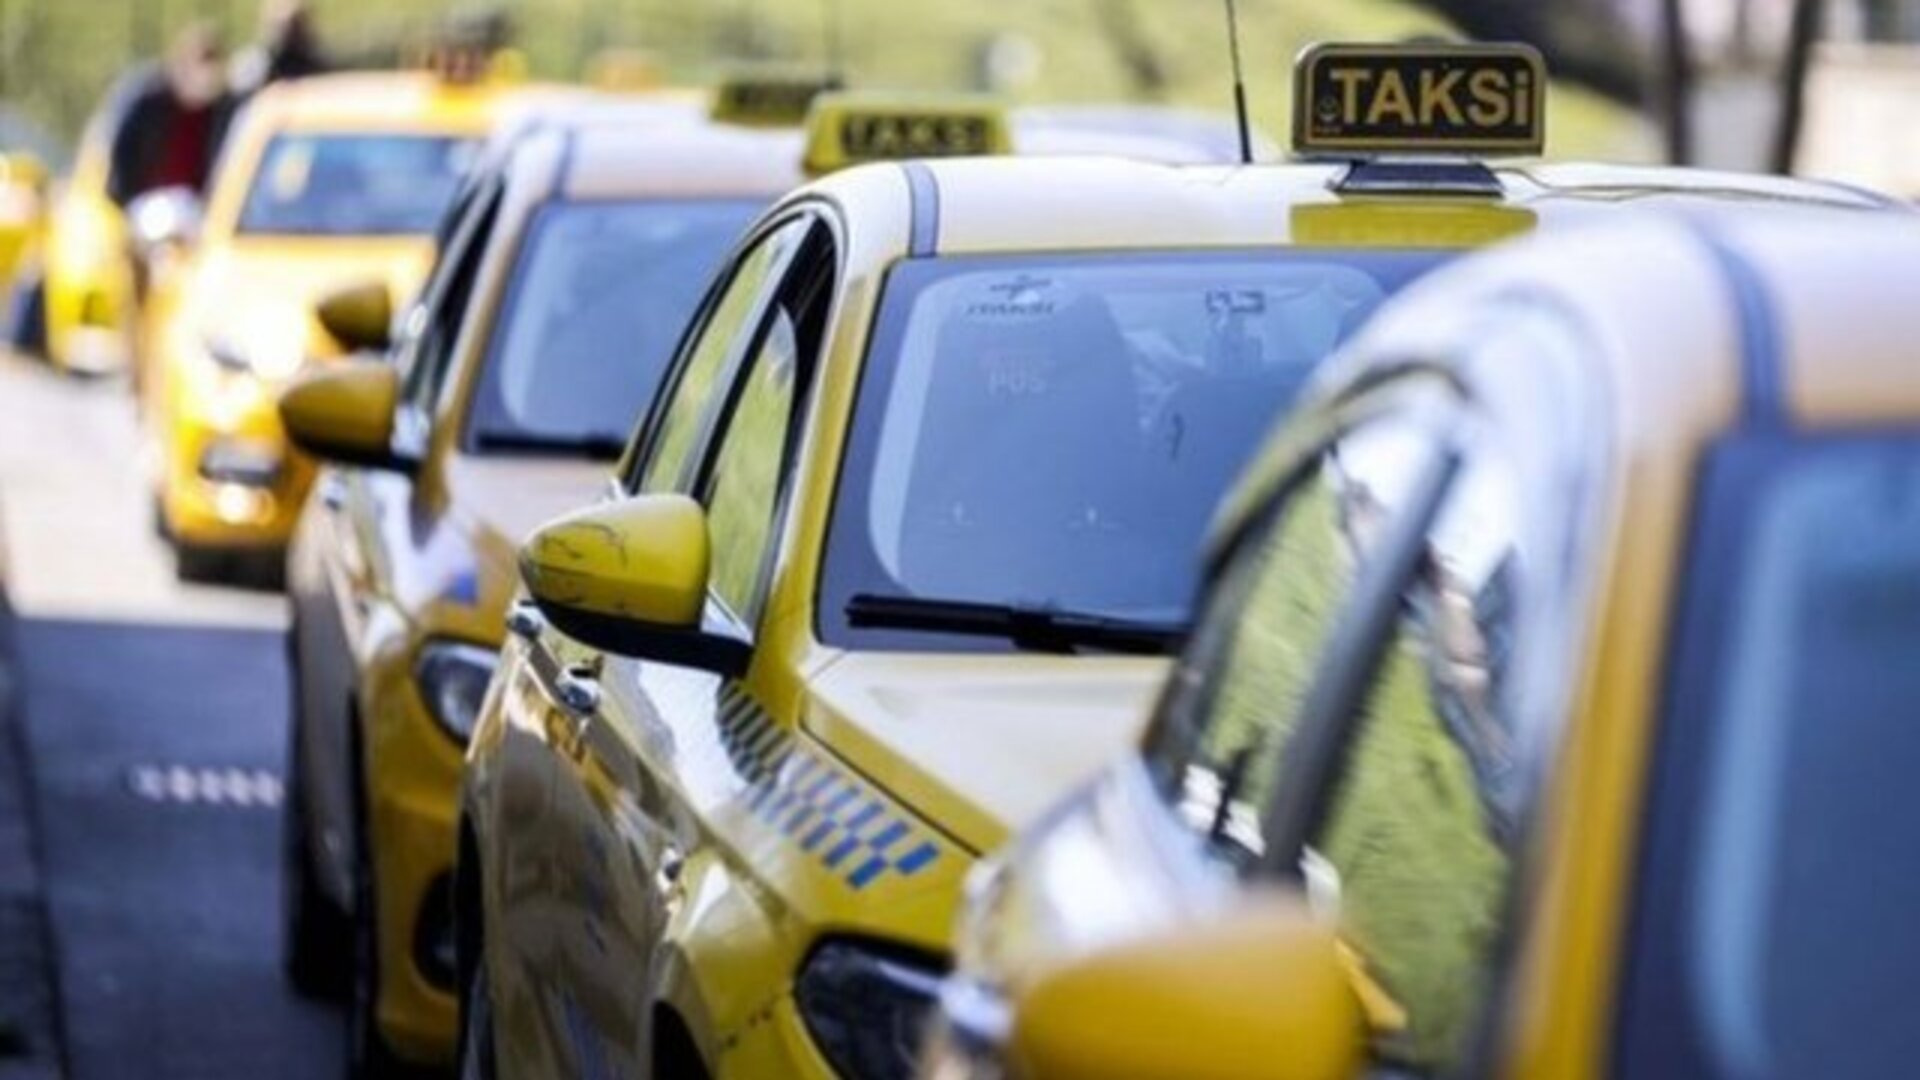 İstanbul’da taksi bulamayan vatandaşa polis desteği